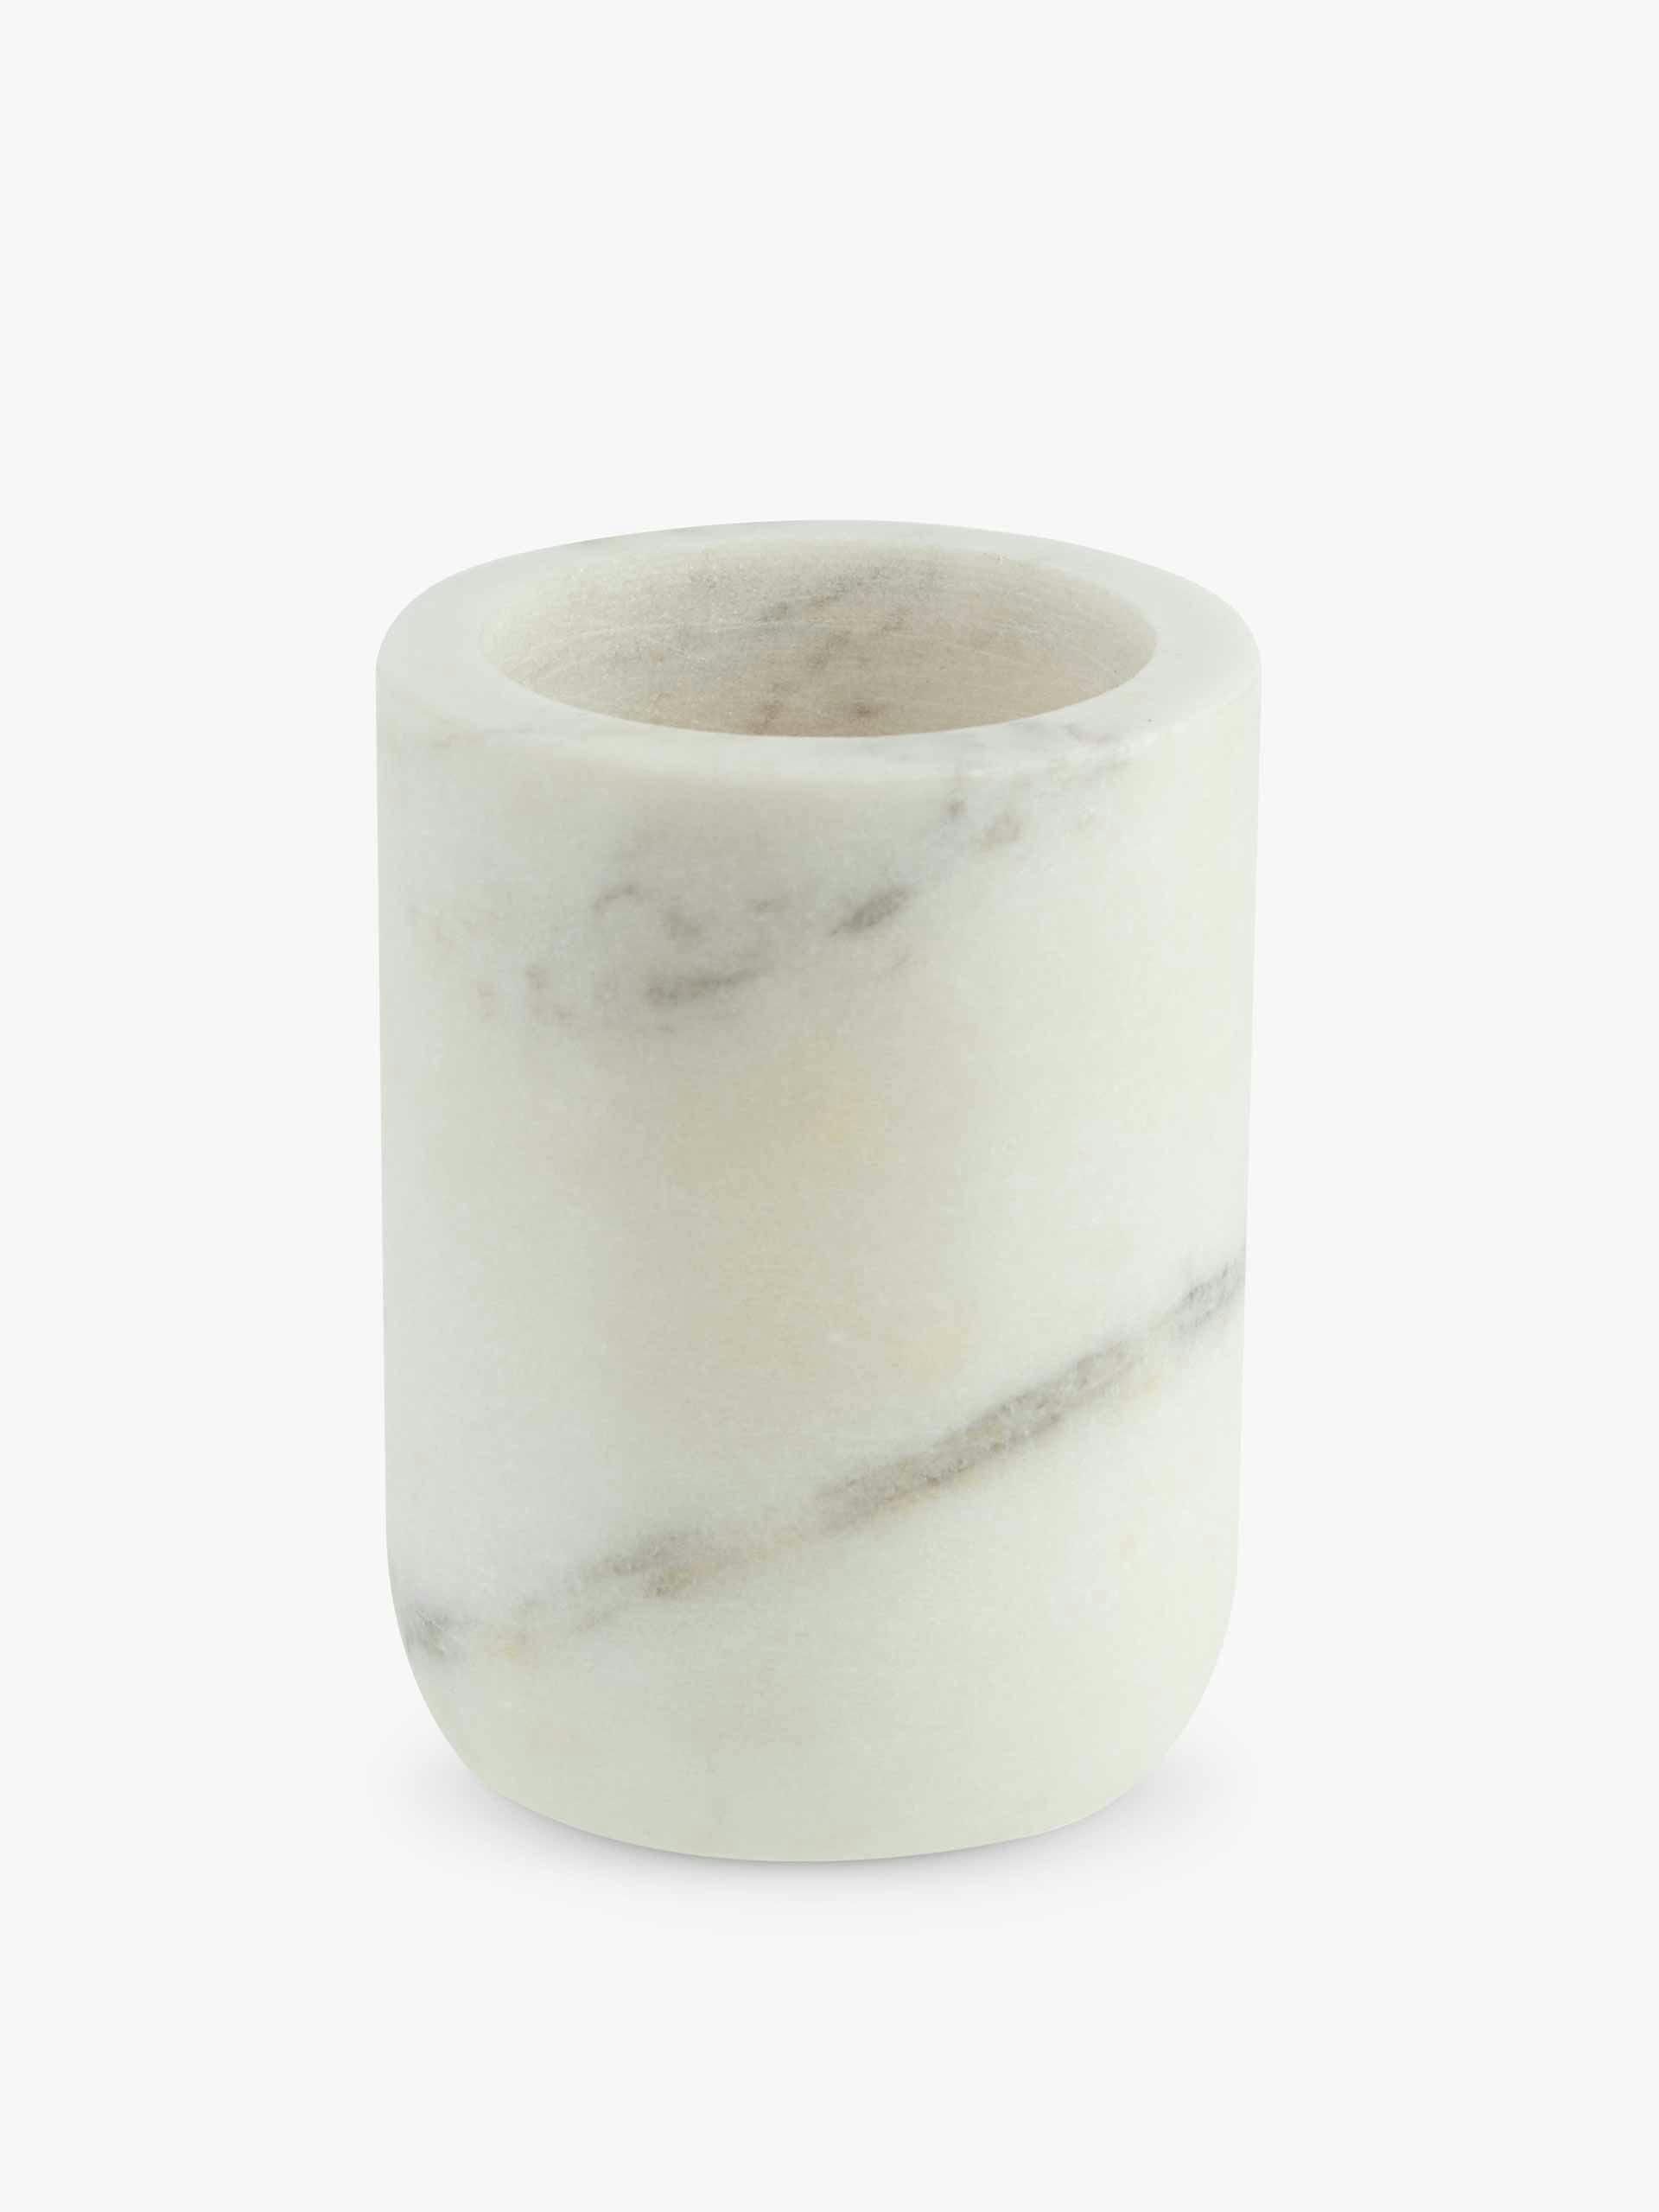 White marble tumbler